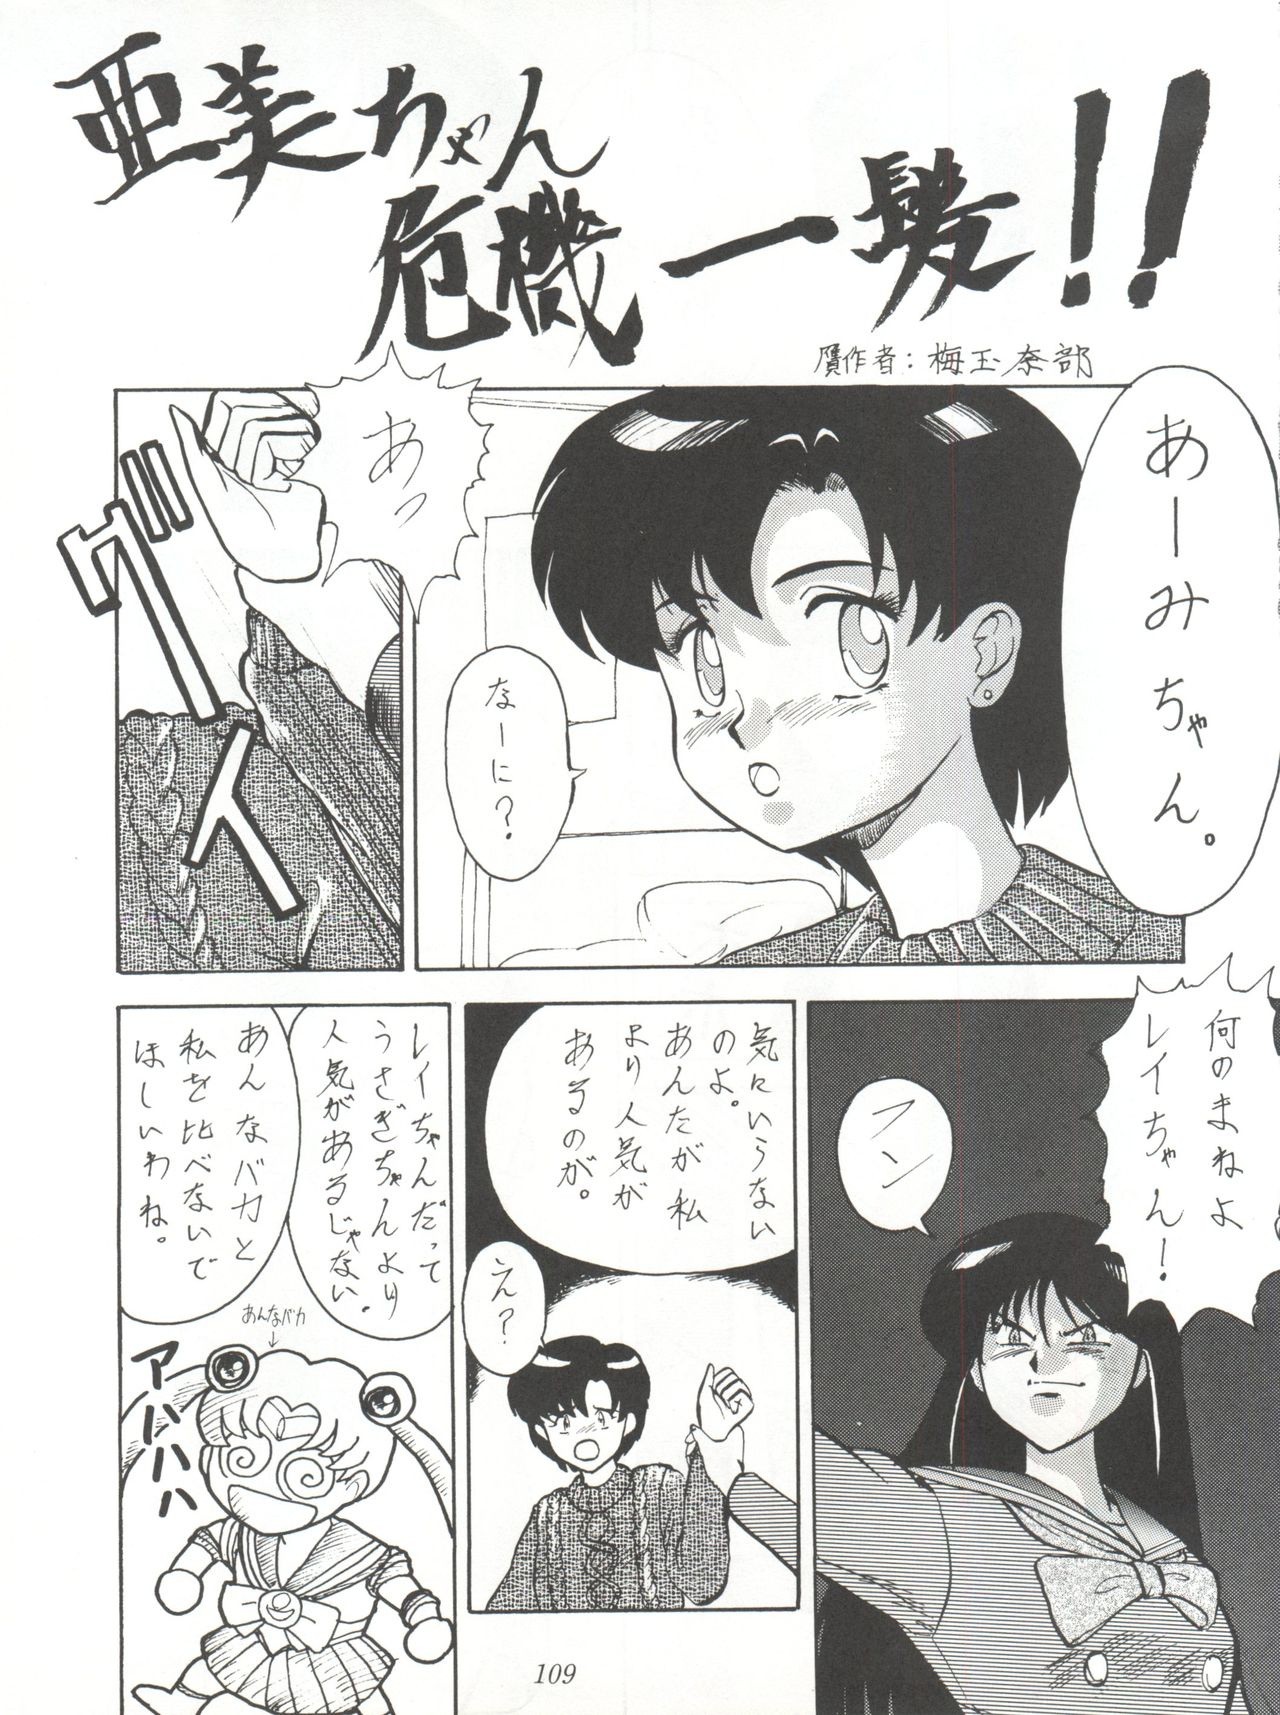 Yuuki and Yume and Mukubo's Japanese hentai manga picture 76